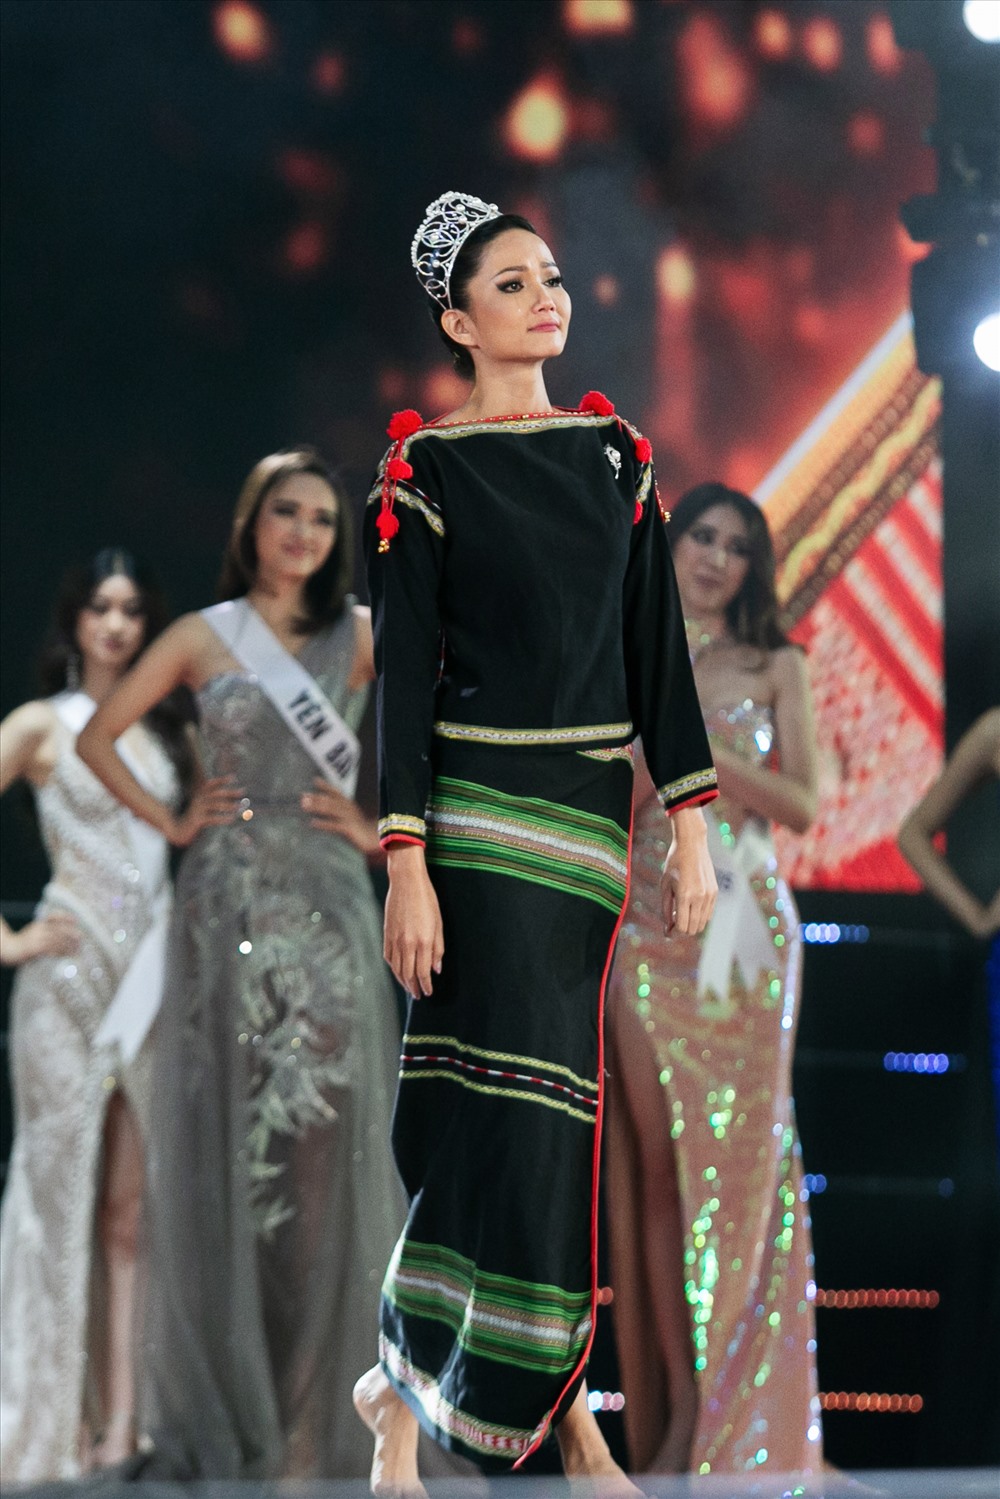 Trên sân khấu Hoa hậu H’Hen Niê xuất hiện với đôi chân trần và trang phục Êđê, đội vương miện trước khi trao lại danh hiệu cho người kế vị tiếp theo.